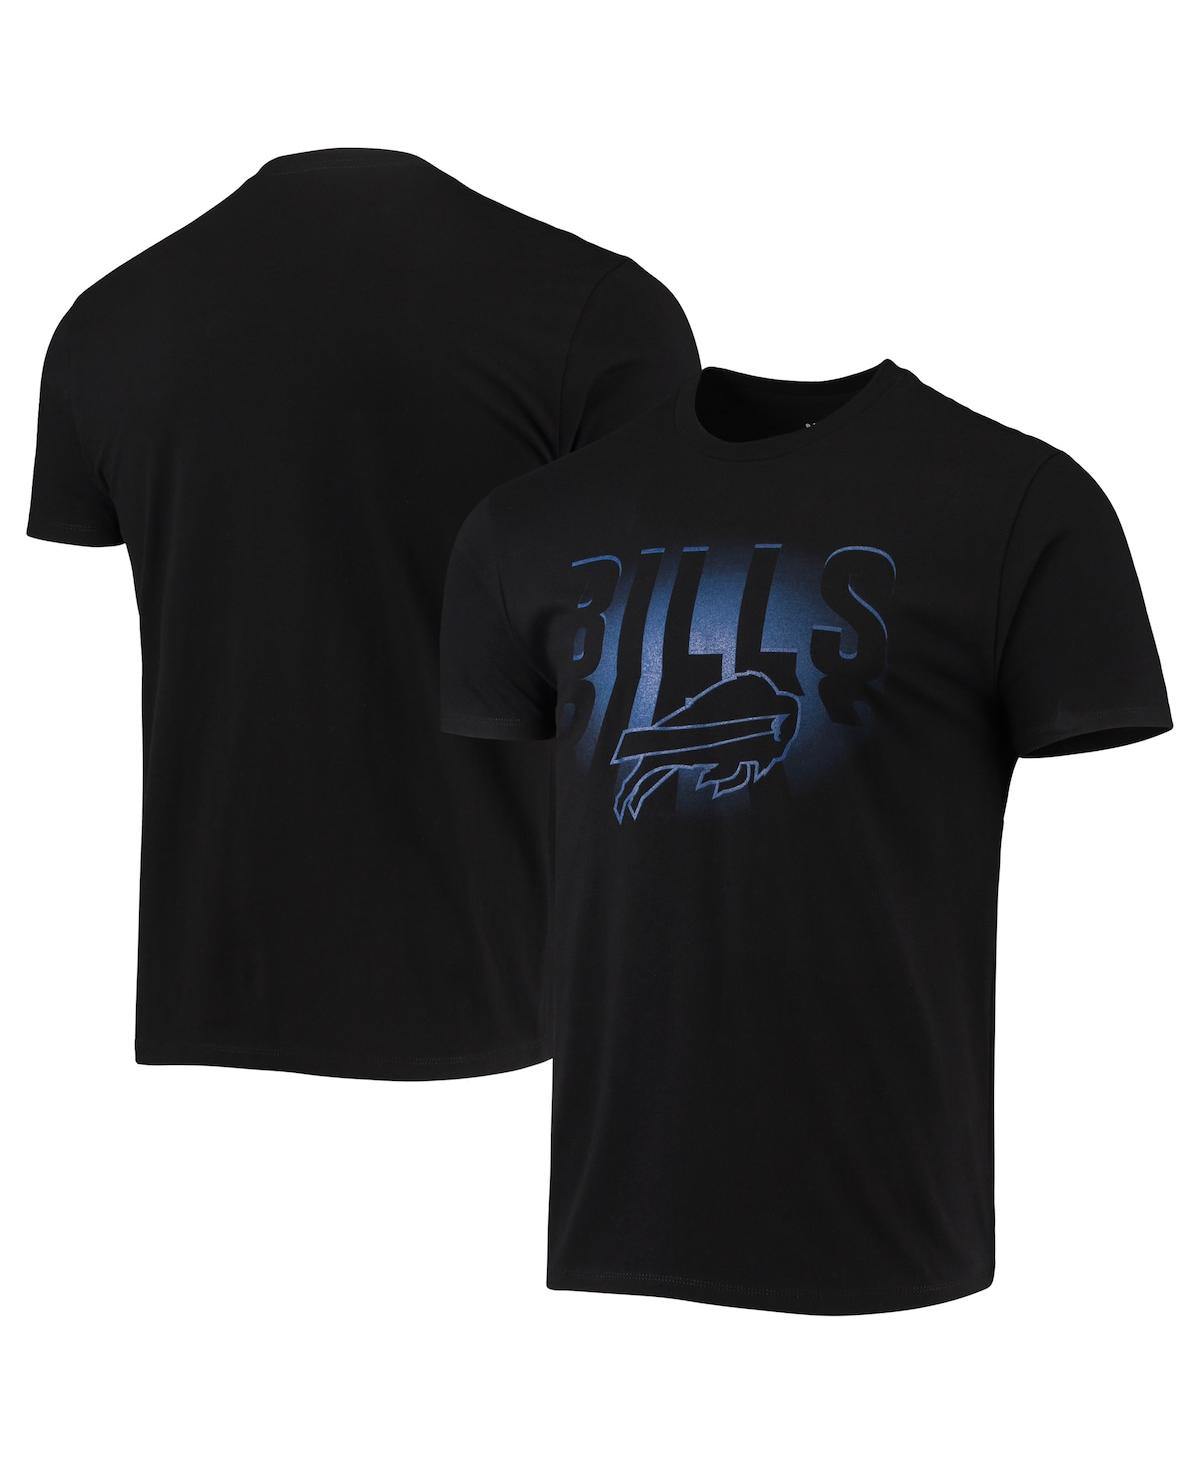 Men's Black Buffalo Bills Spotlight T-shirt - Black